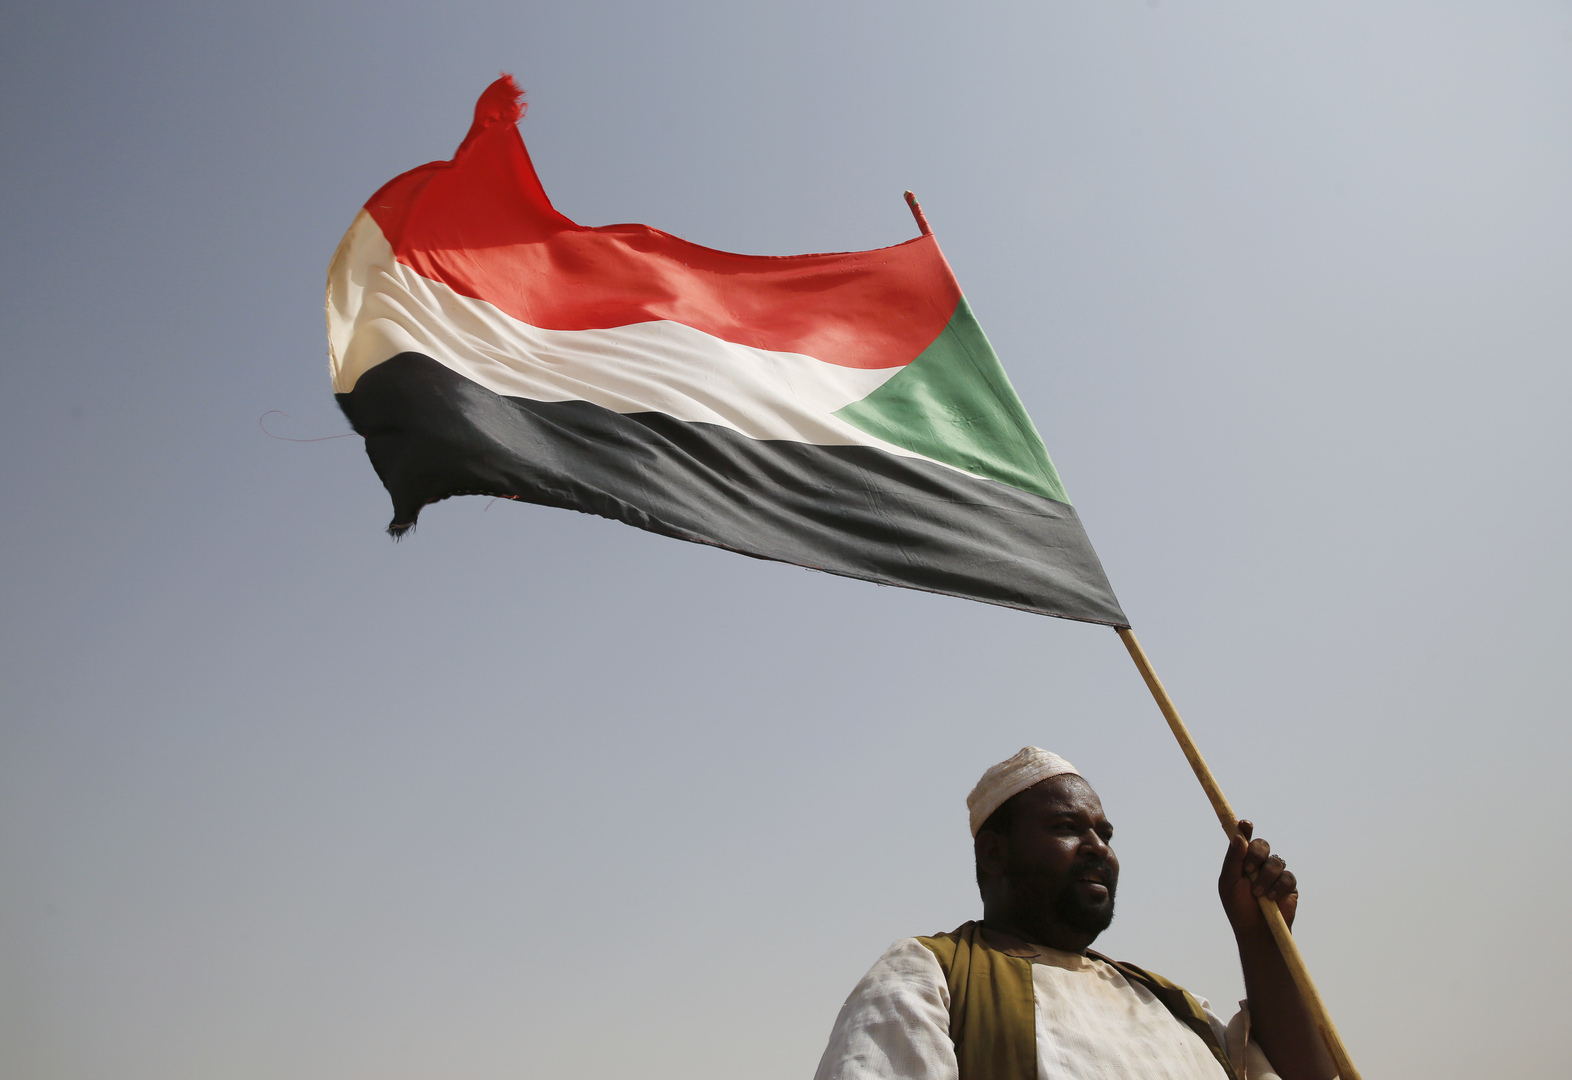 السودان يعلن رسميا موقفه من وساطة تركيا لحل الأزمة الحدودية مع إثيوبيا